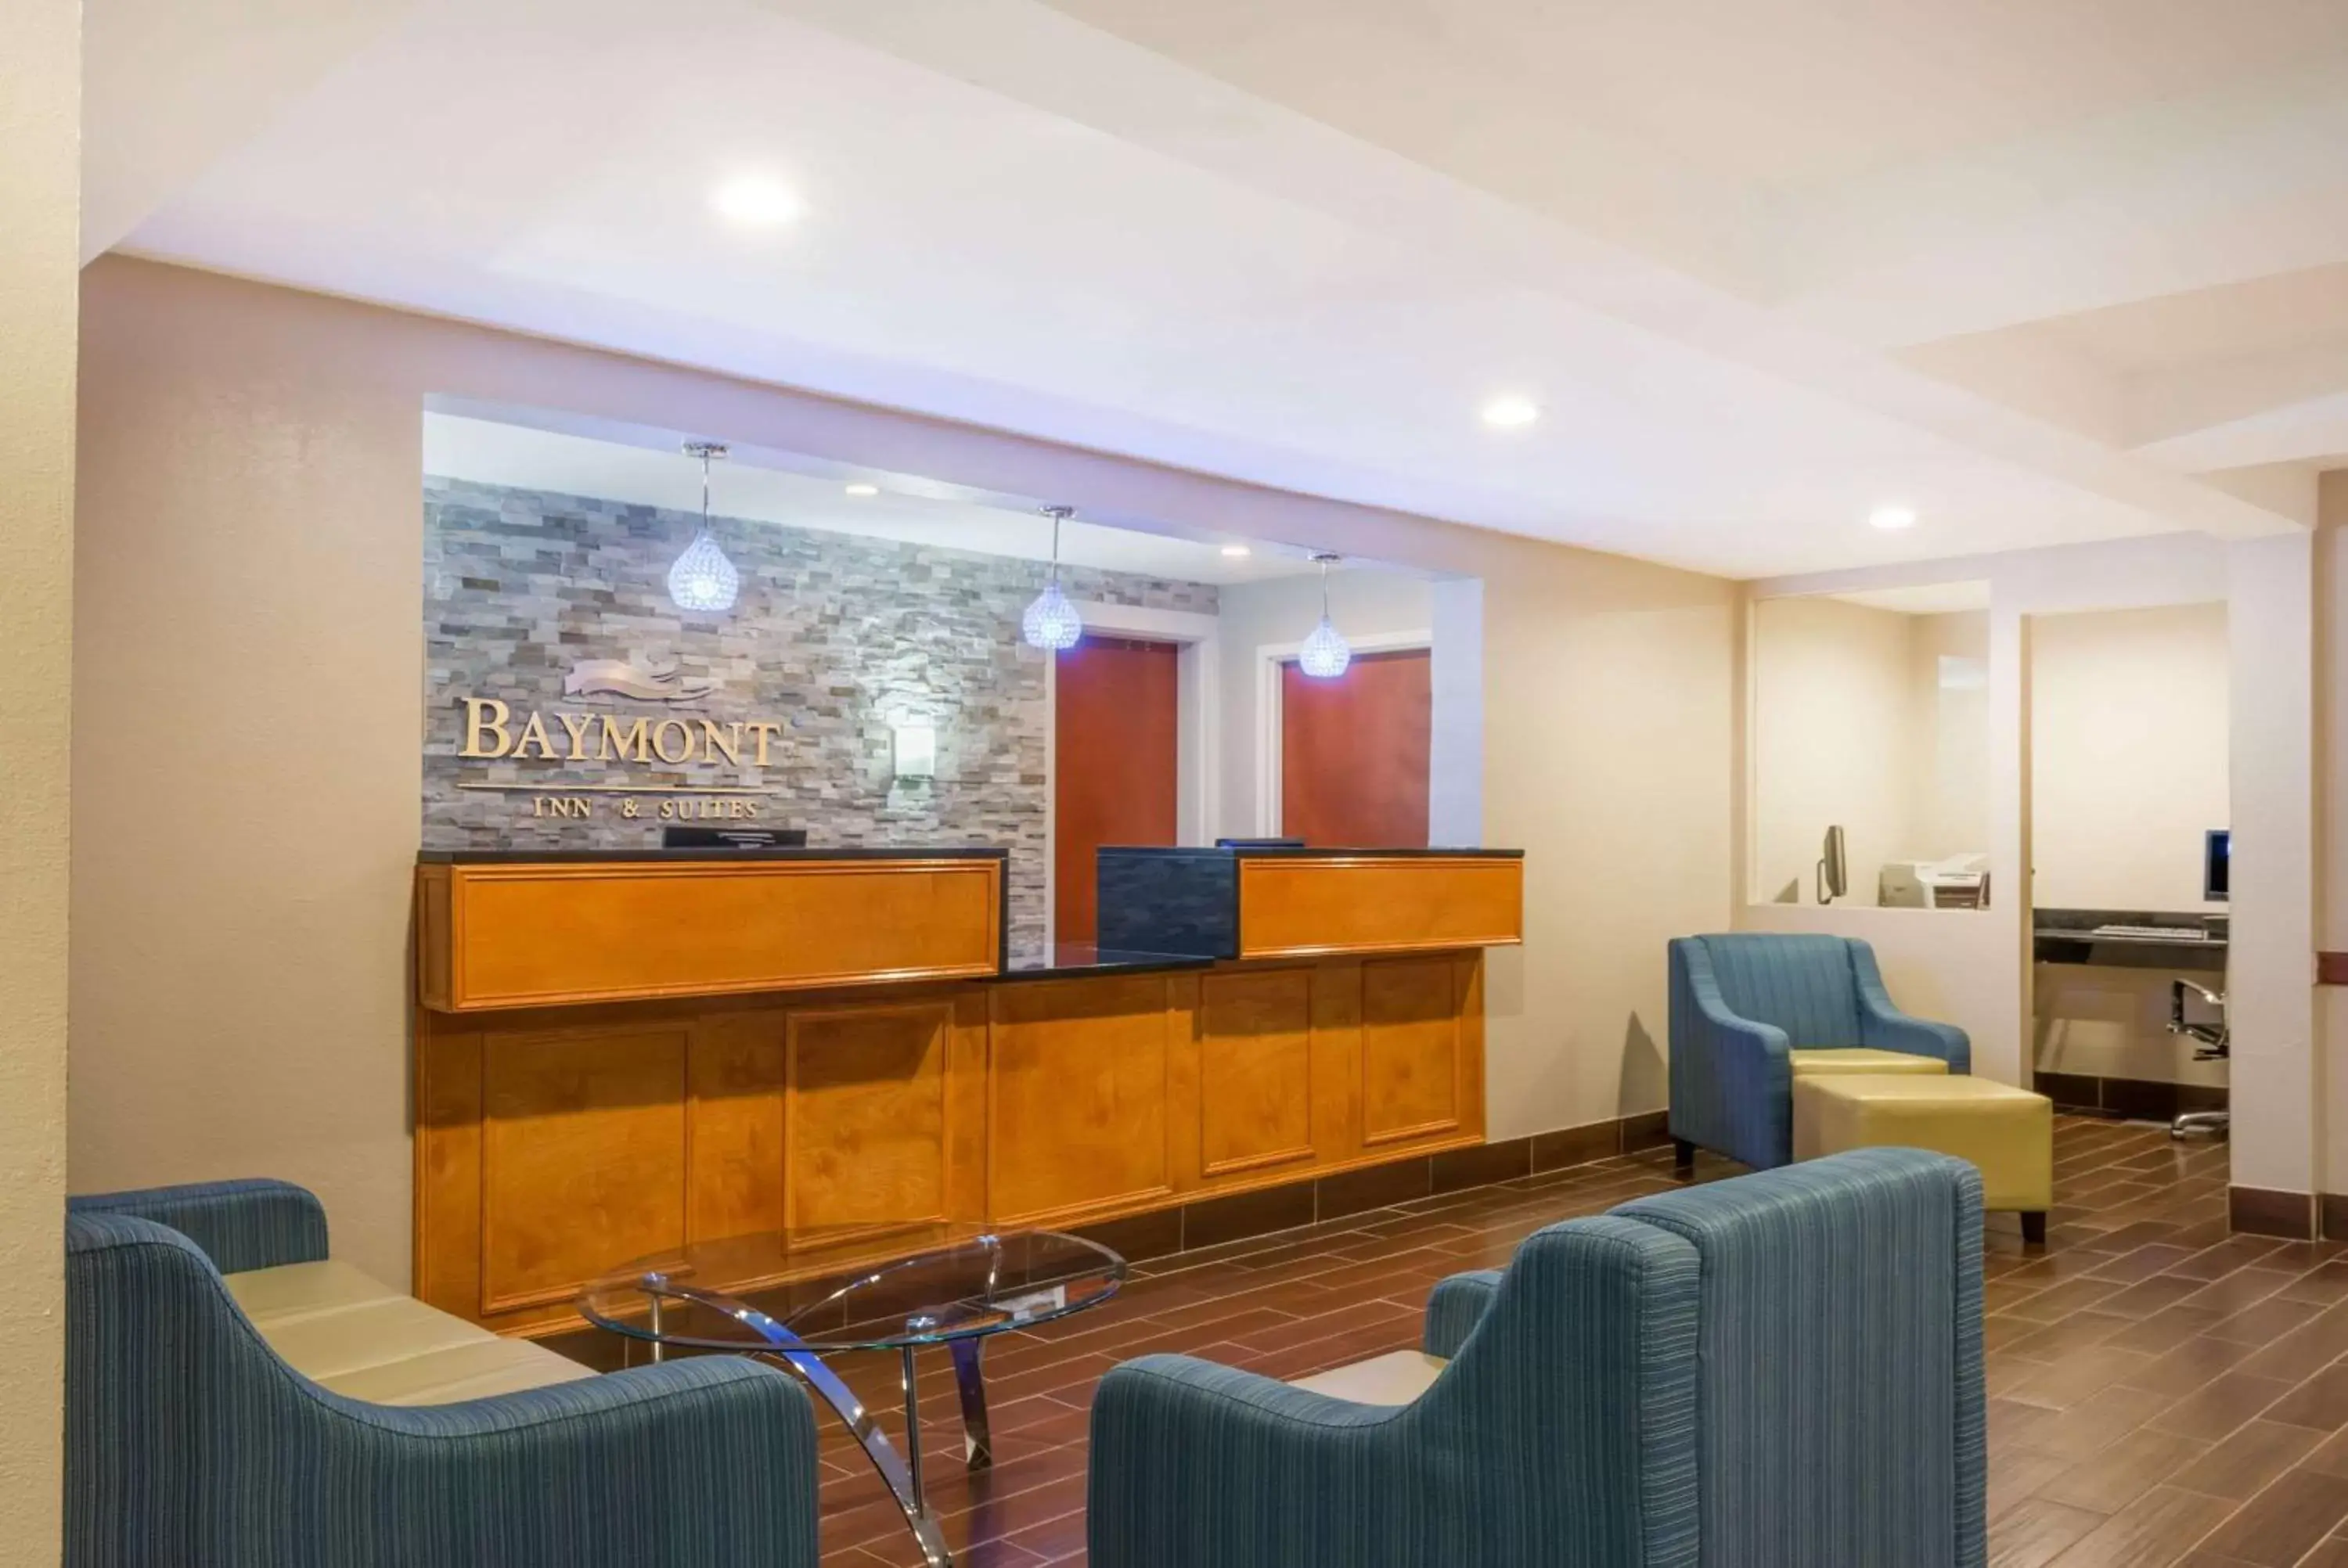 Lobby or reception, Lobby/Reception in Baymont by Wyndham Georgetown